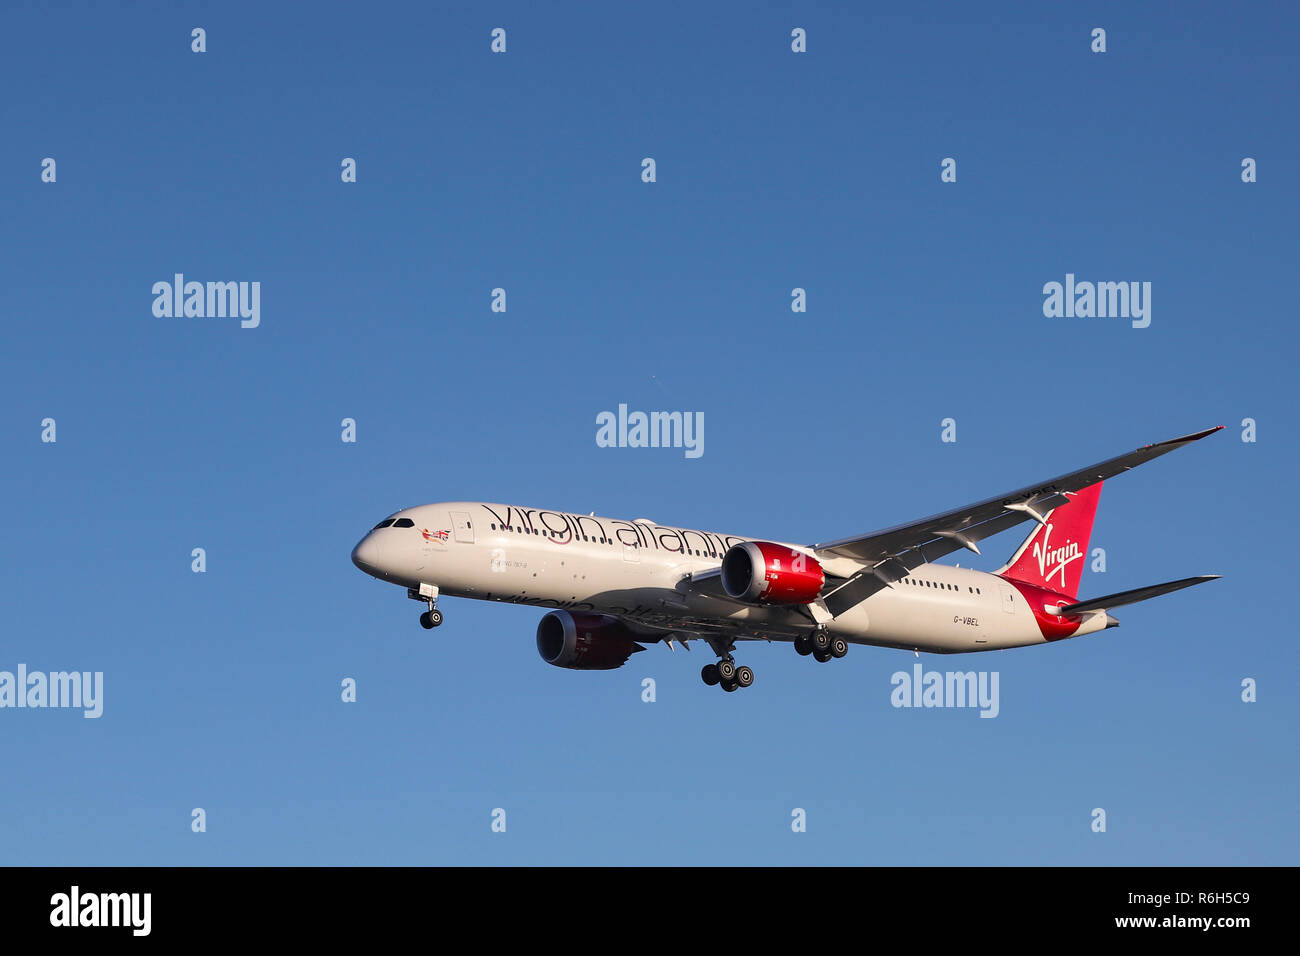 Virgin Atlantic Airways Boeing 787-9 Dreamliner vu l'atterrissage à  l'aéroport international Heathrow de Londres, Royaume-Uni. L'avion est un  Boeing 787 Dreamliner qui vole depuis mars 2018, avec le nom de l'avion et